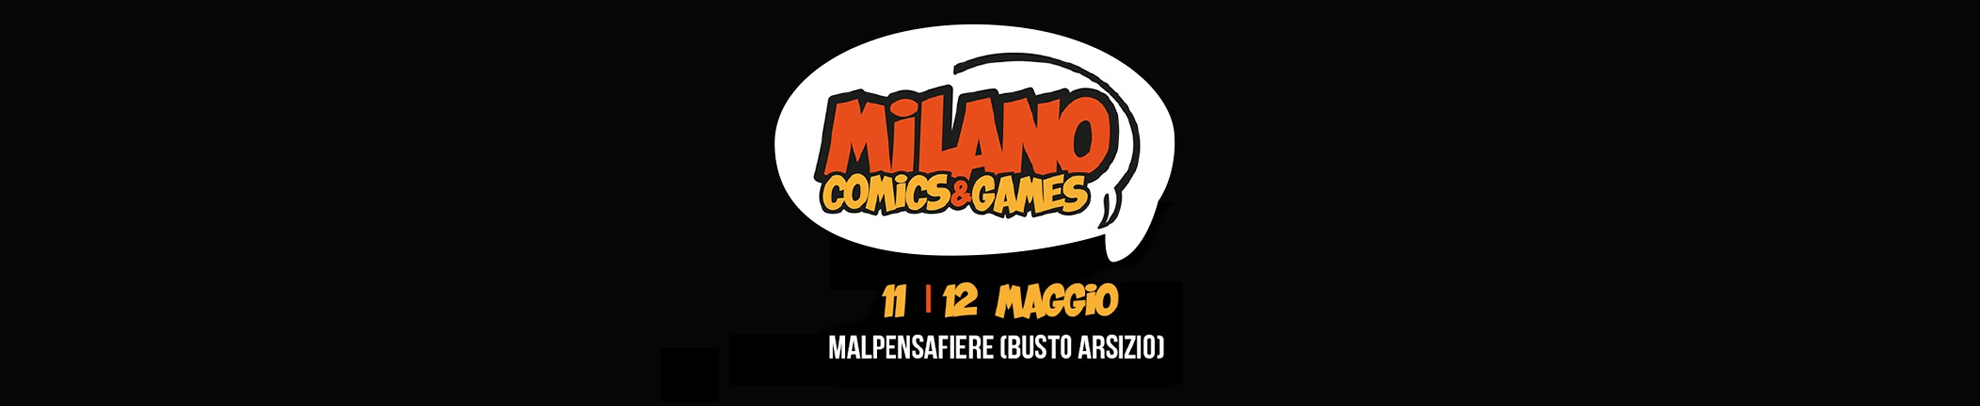 milano-comic-e-games-header